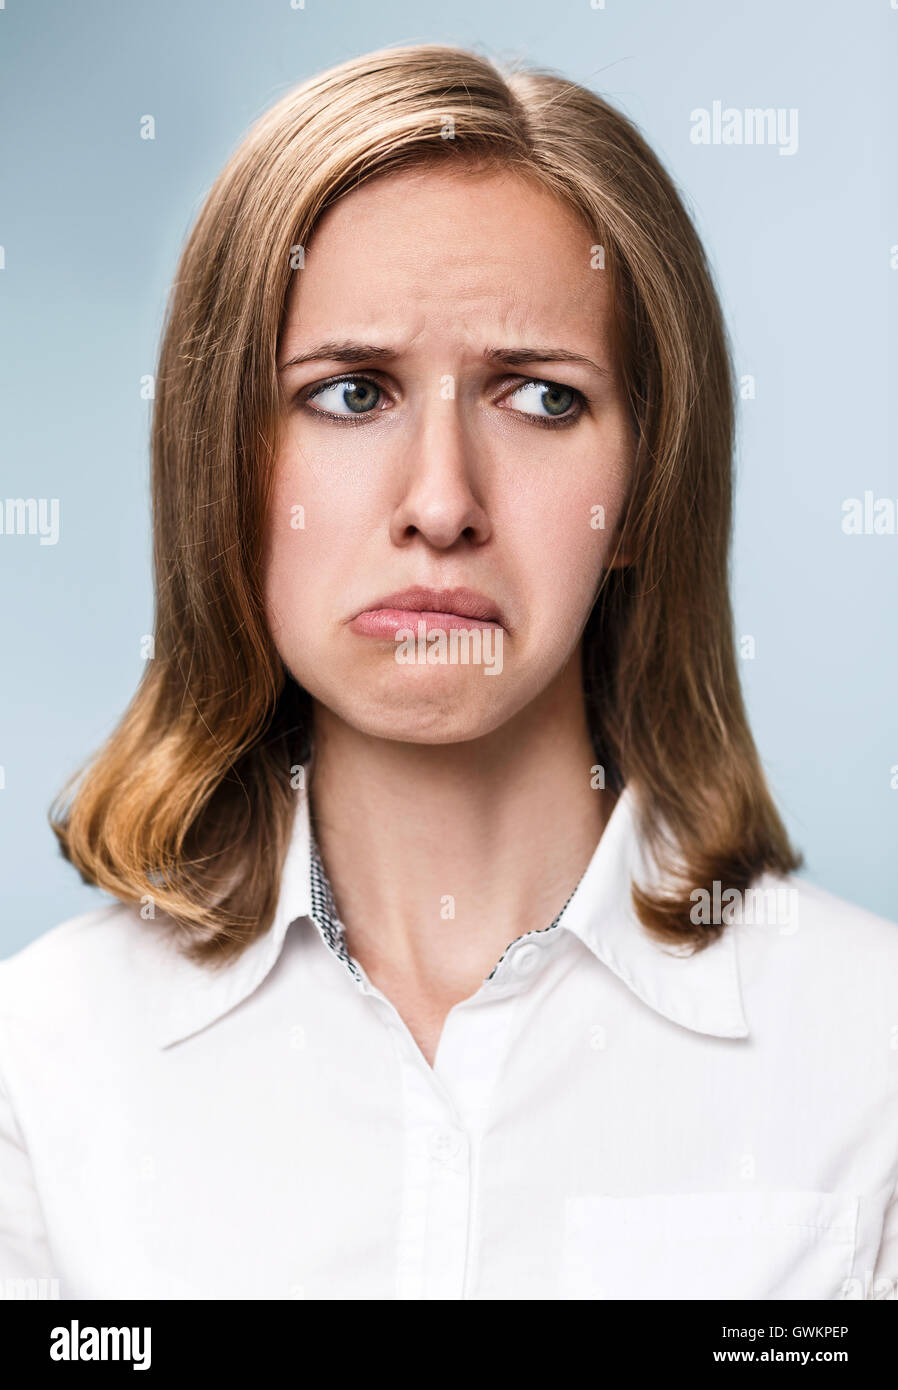 Jeune femme faisant la moue expression sur fond gris Banque D'Images